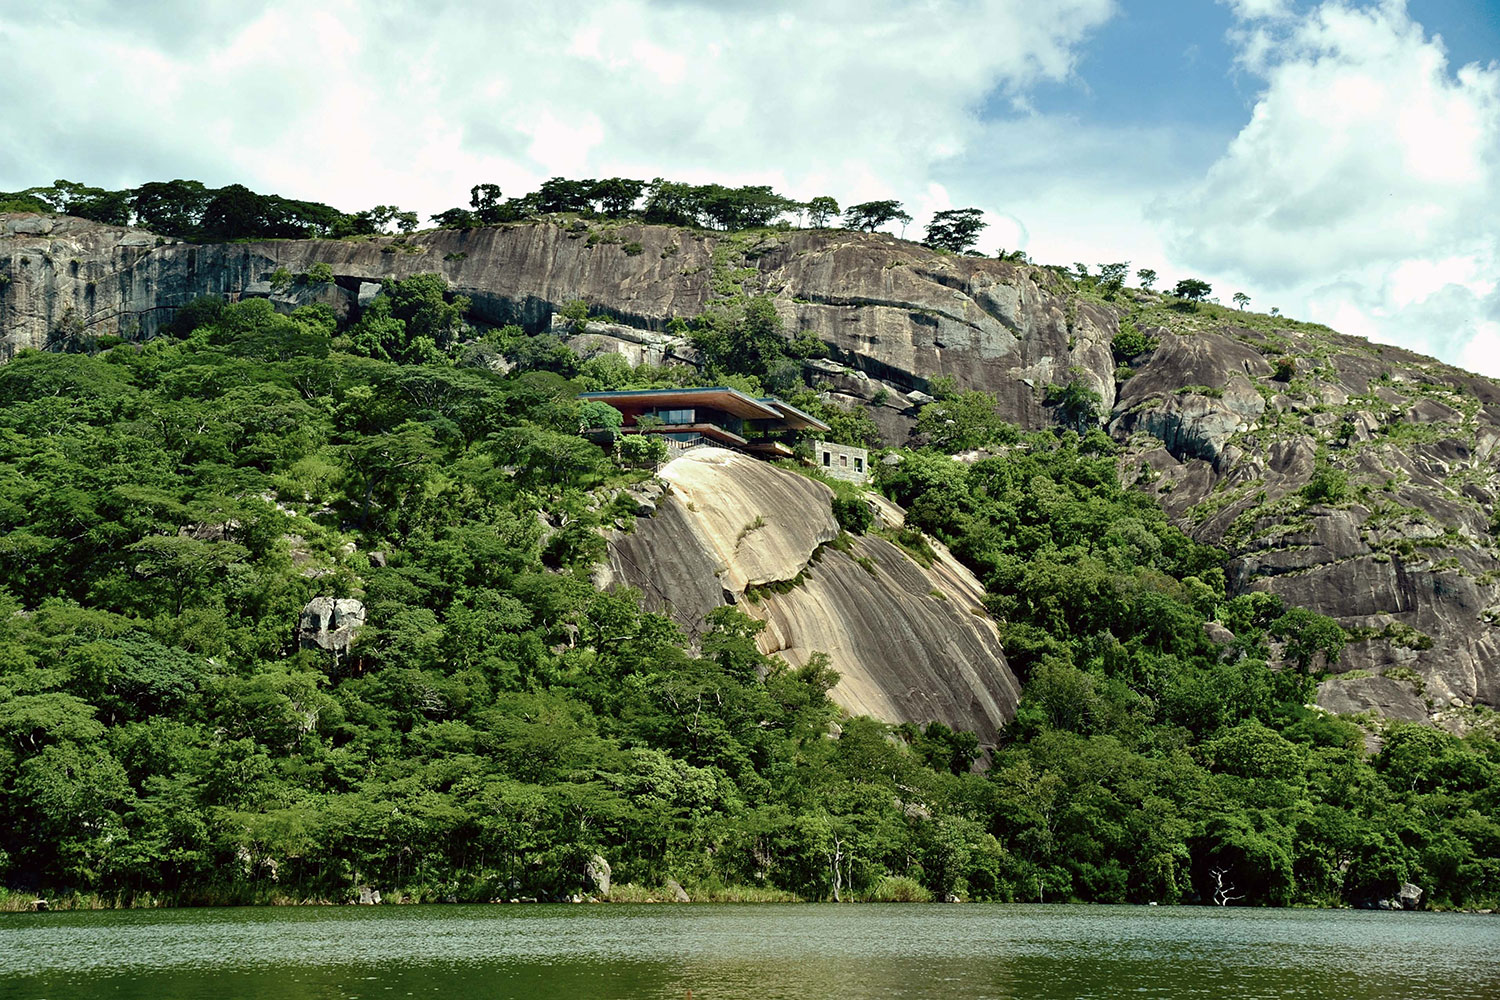 gota dam residence in africa